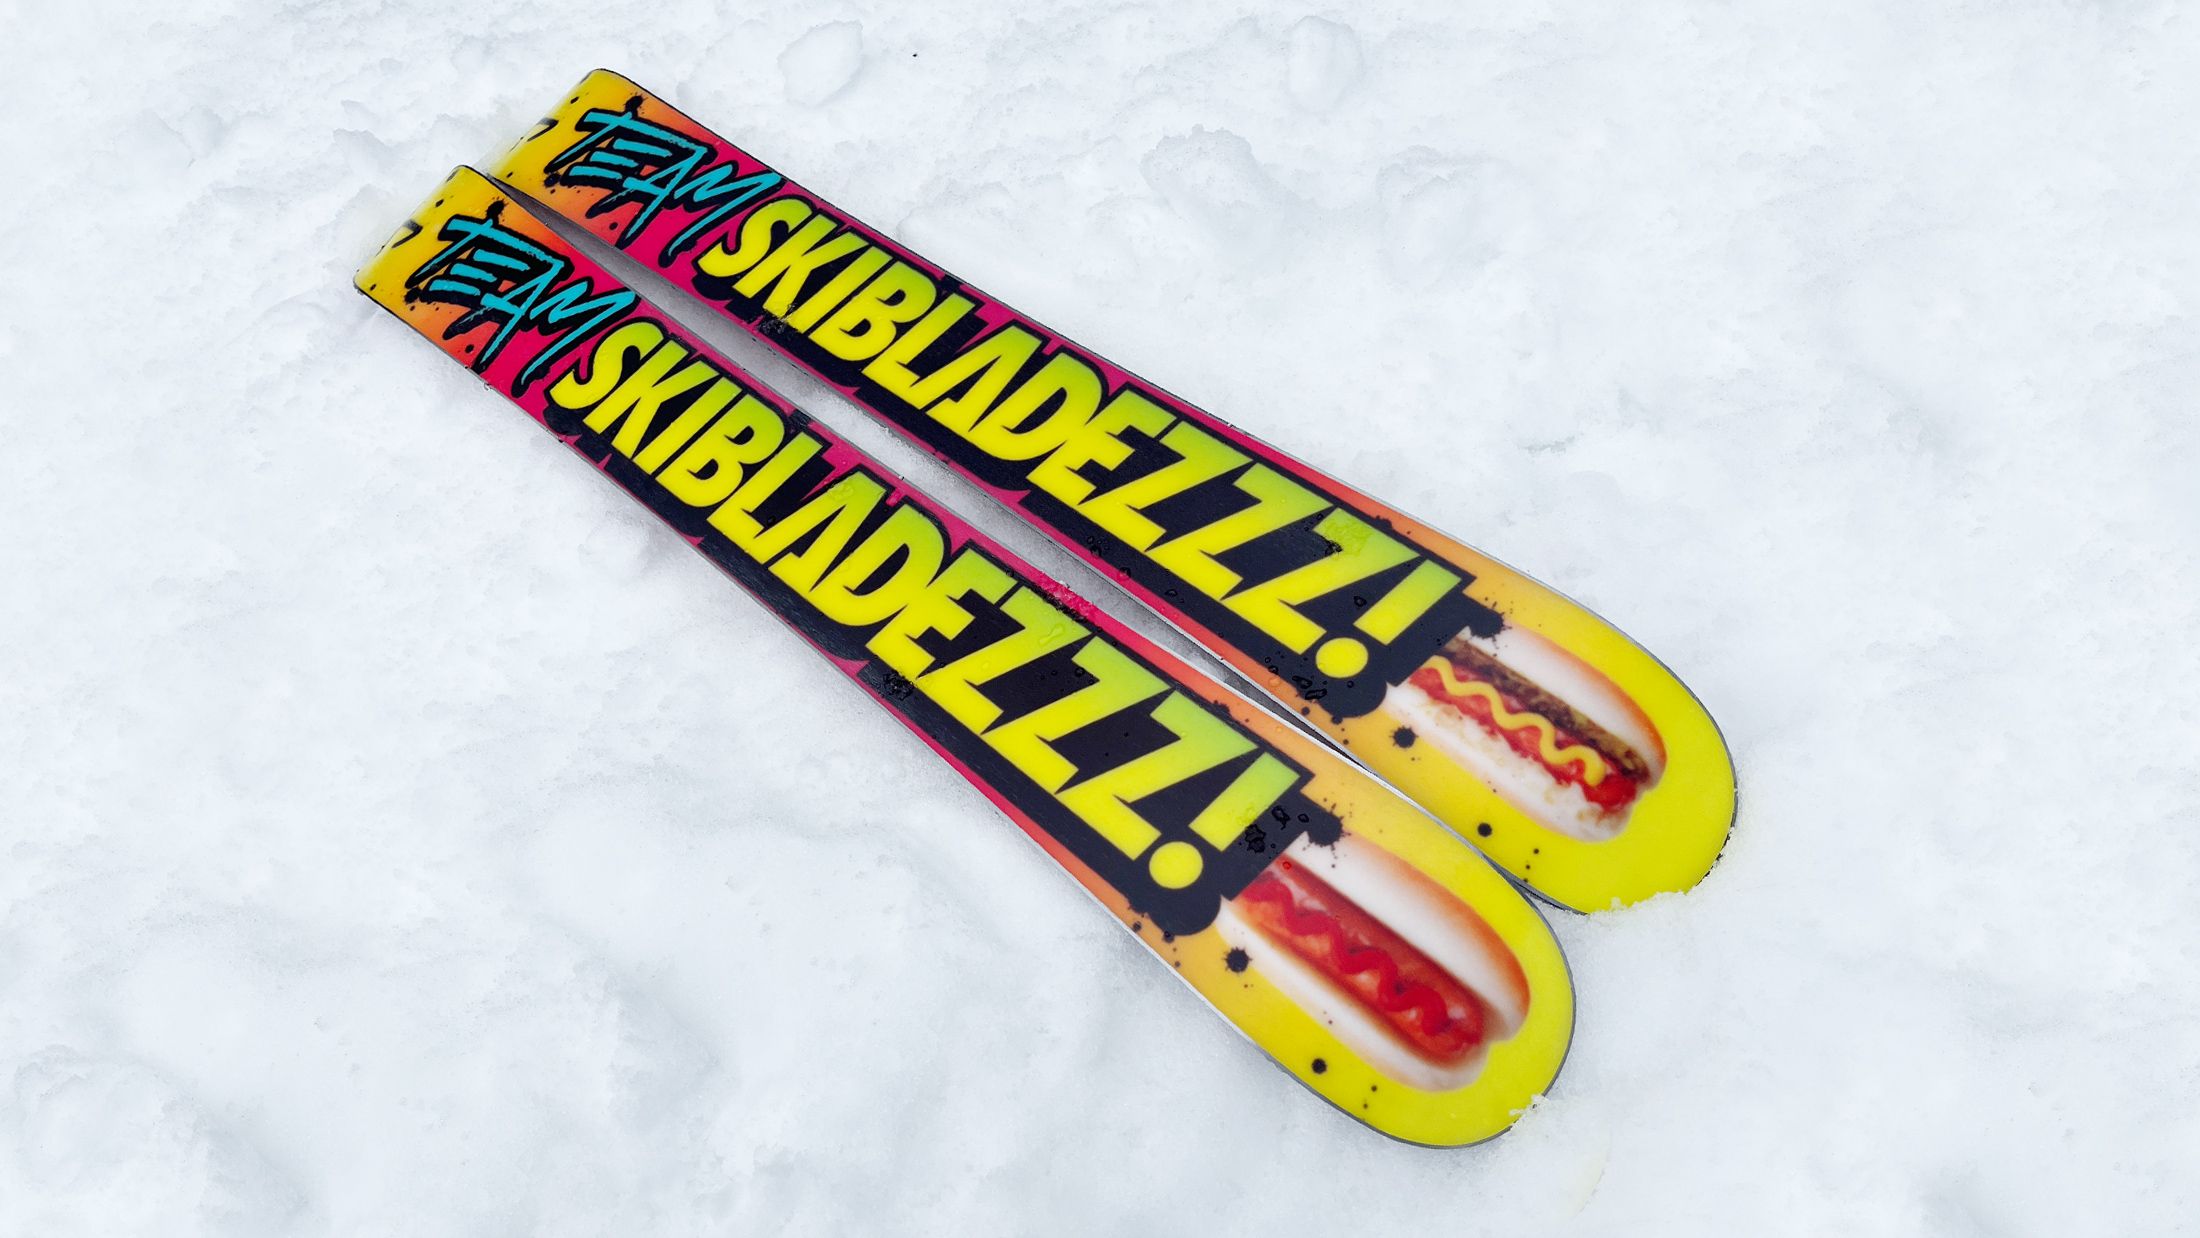 new skis CROSSBLADES INVENTRA GERTSCH SNOWBLADES 2019, bigfoot